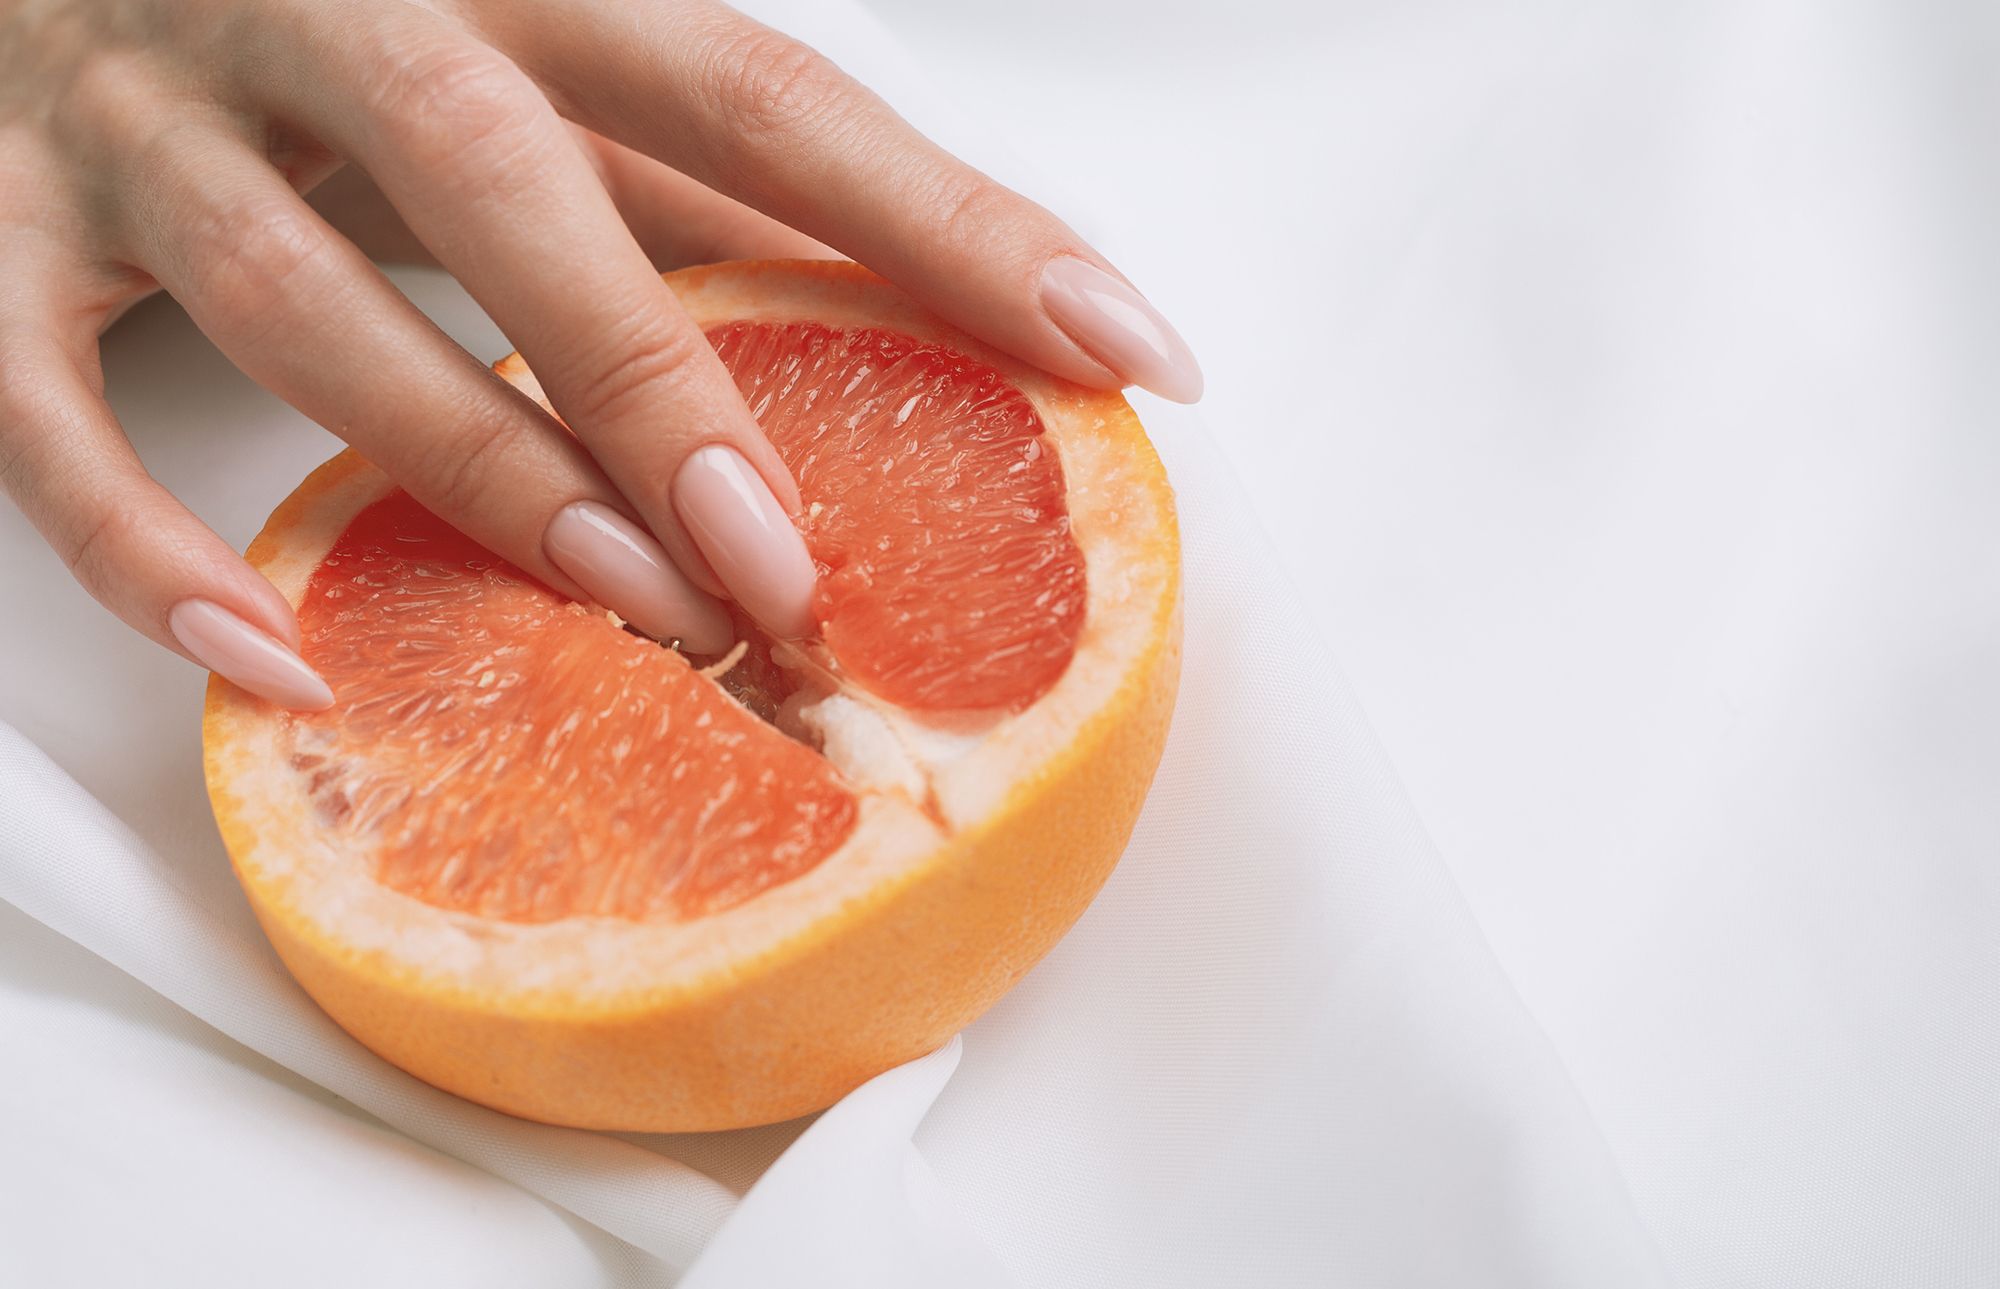 Halbe Orange, in die 2 Finger eingeführt werden